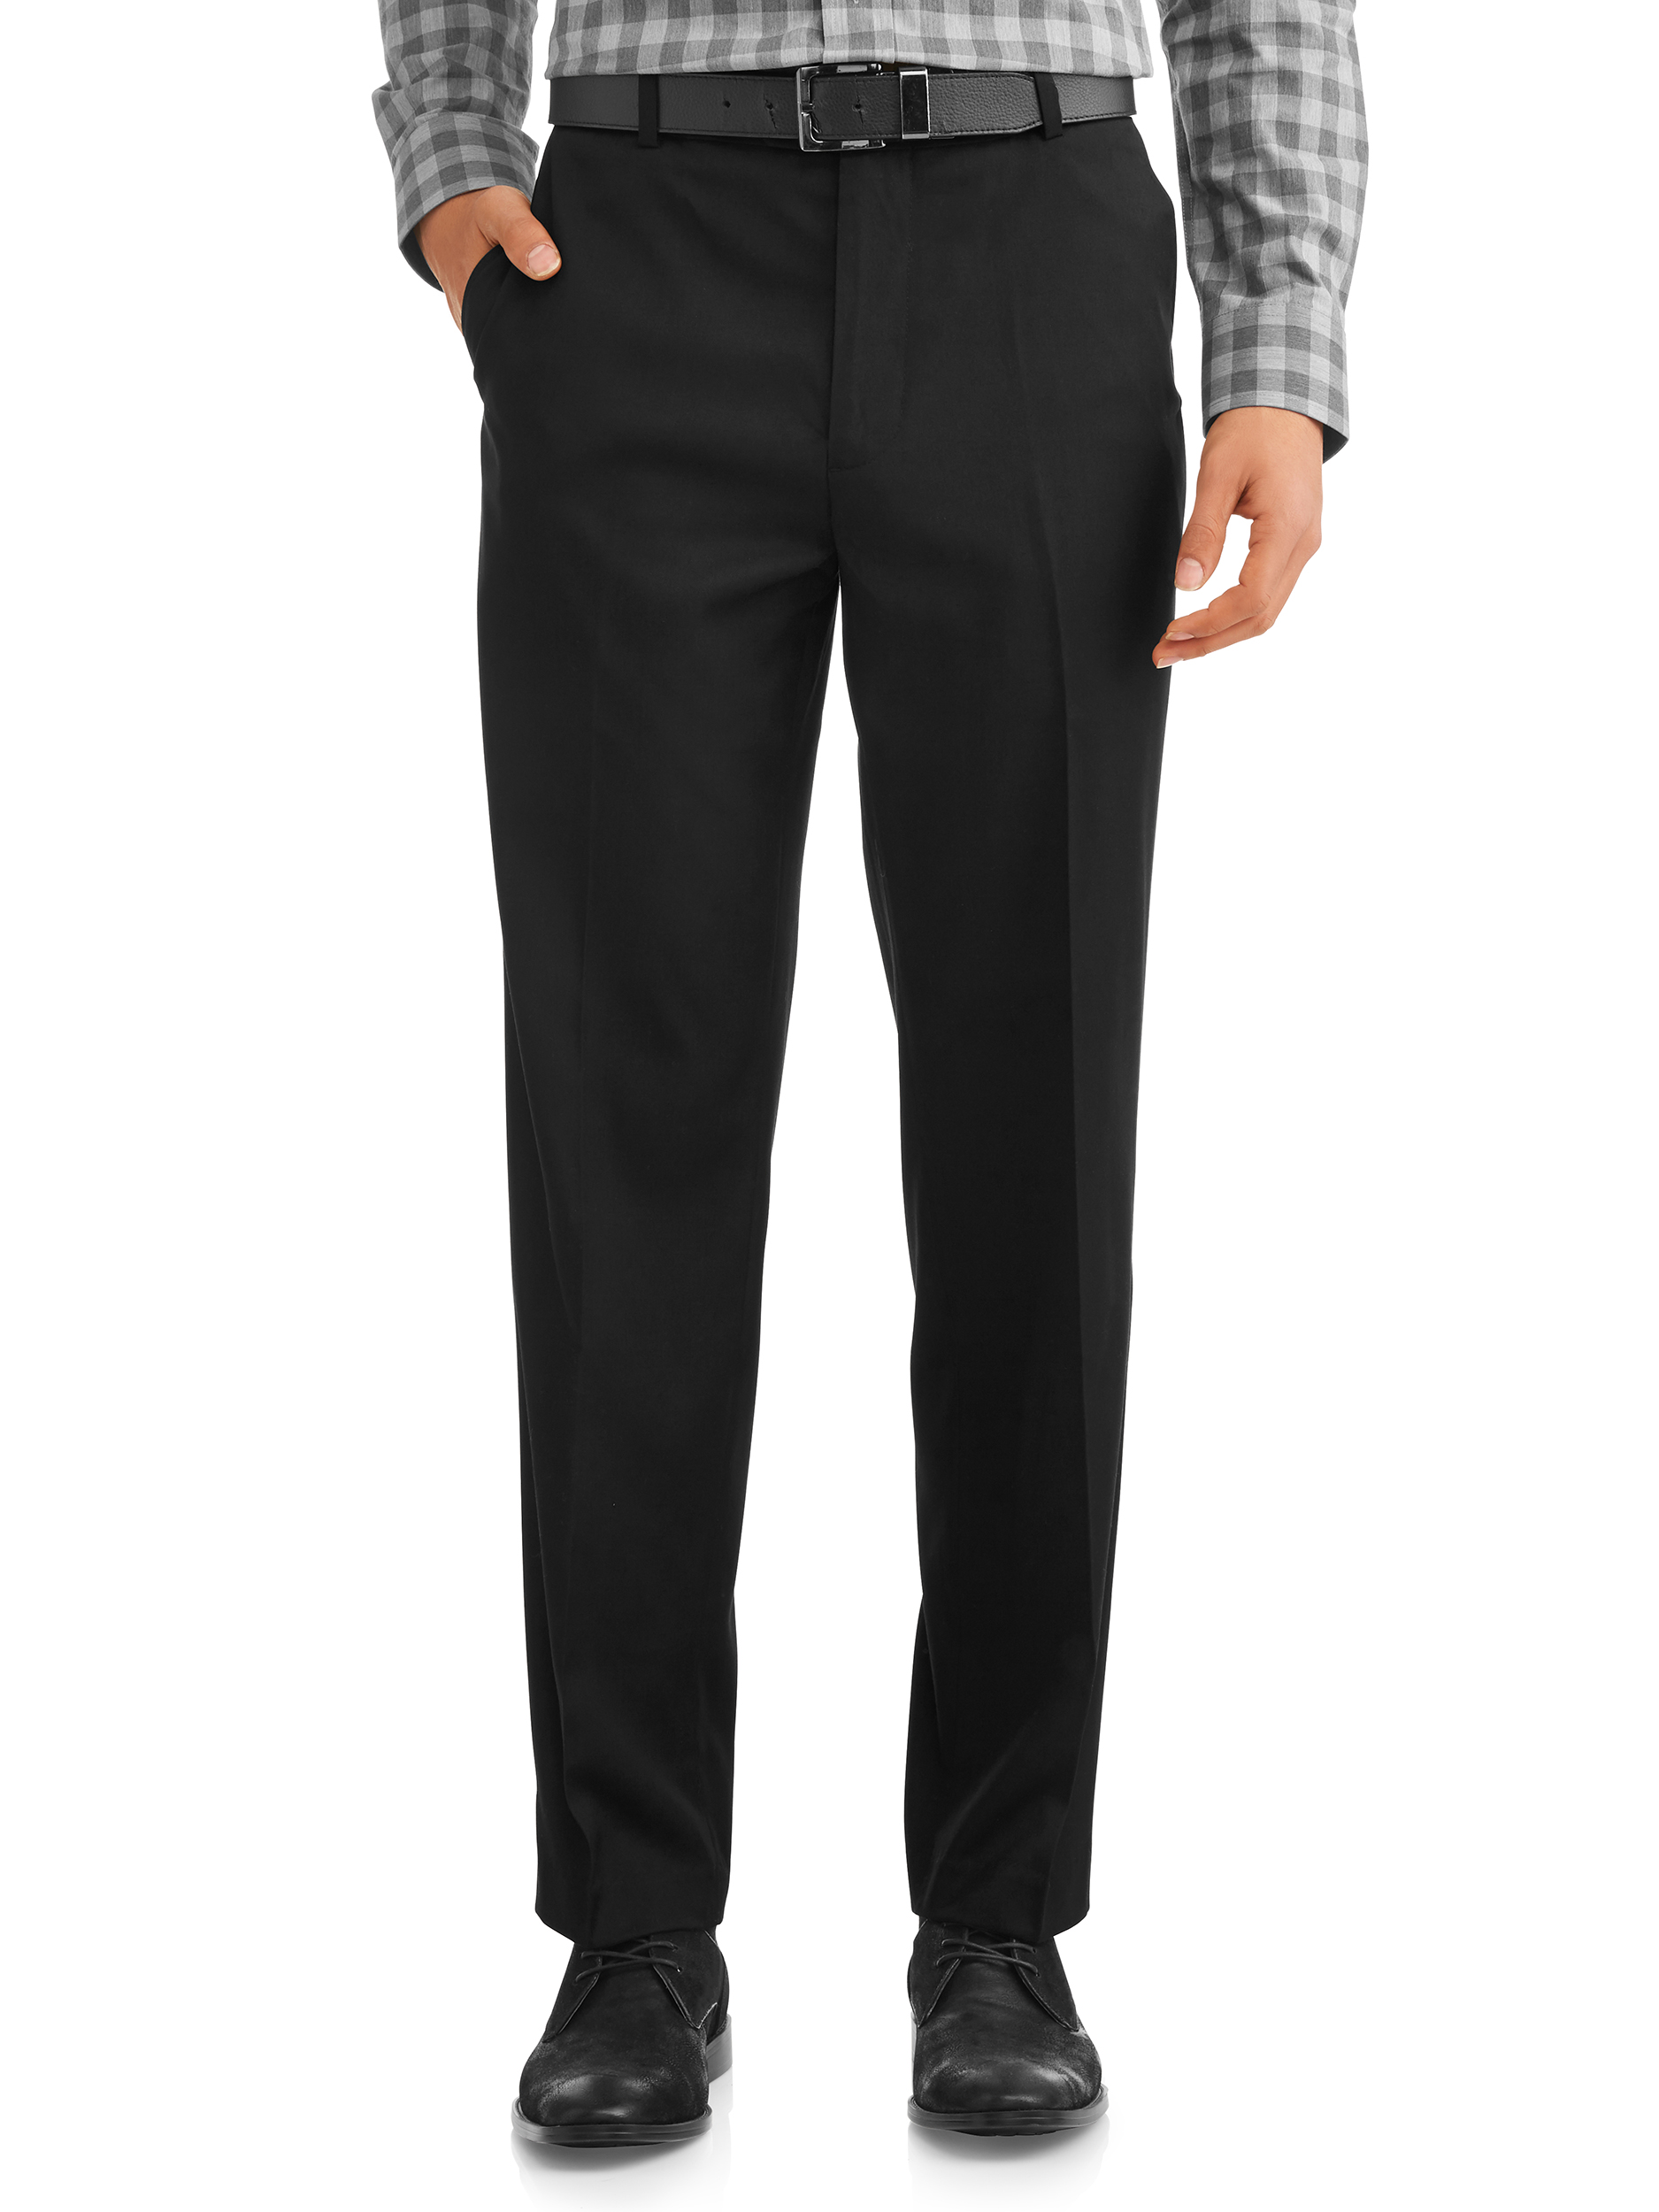 Men's Suit Pants - image 1 of 4